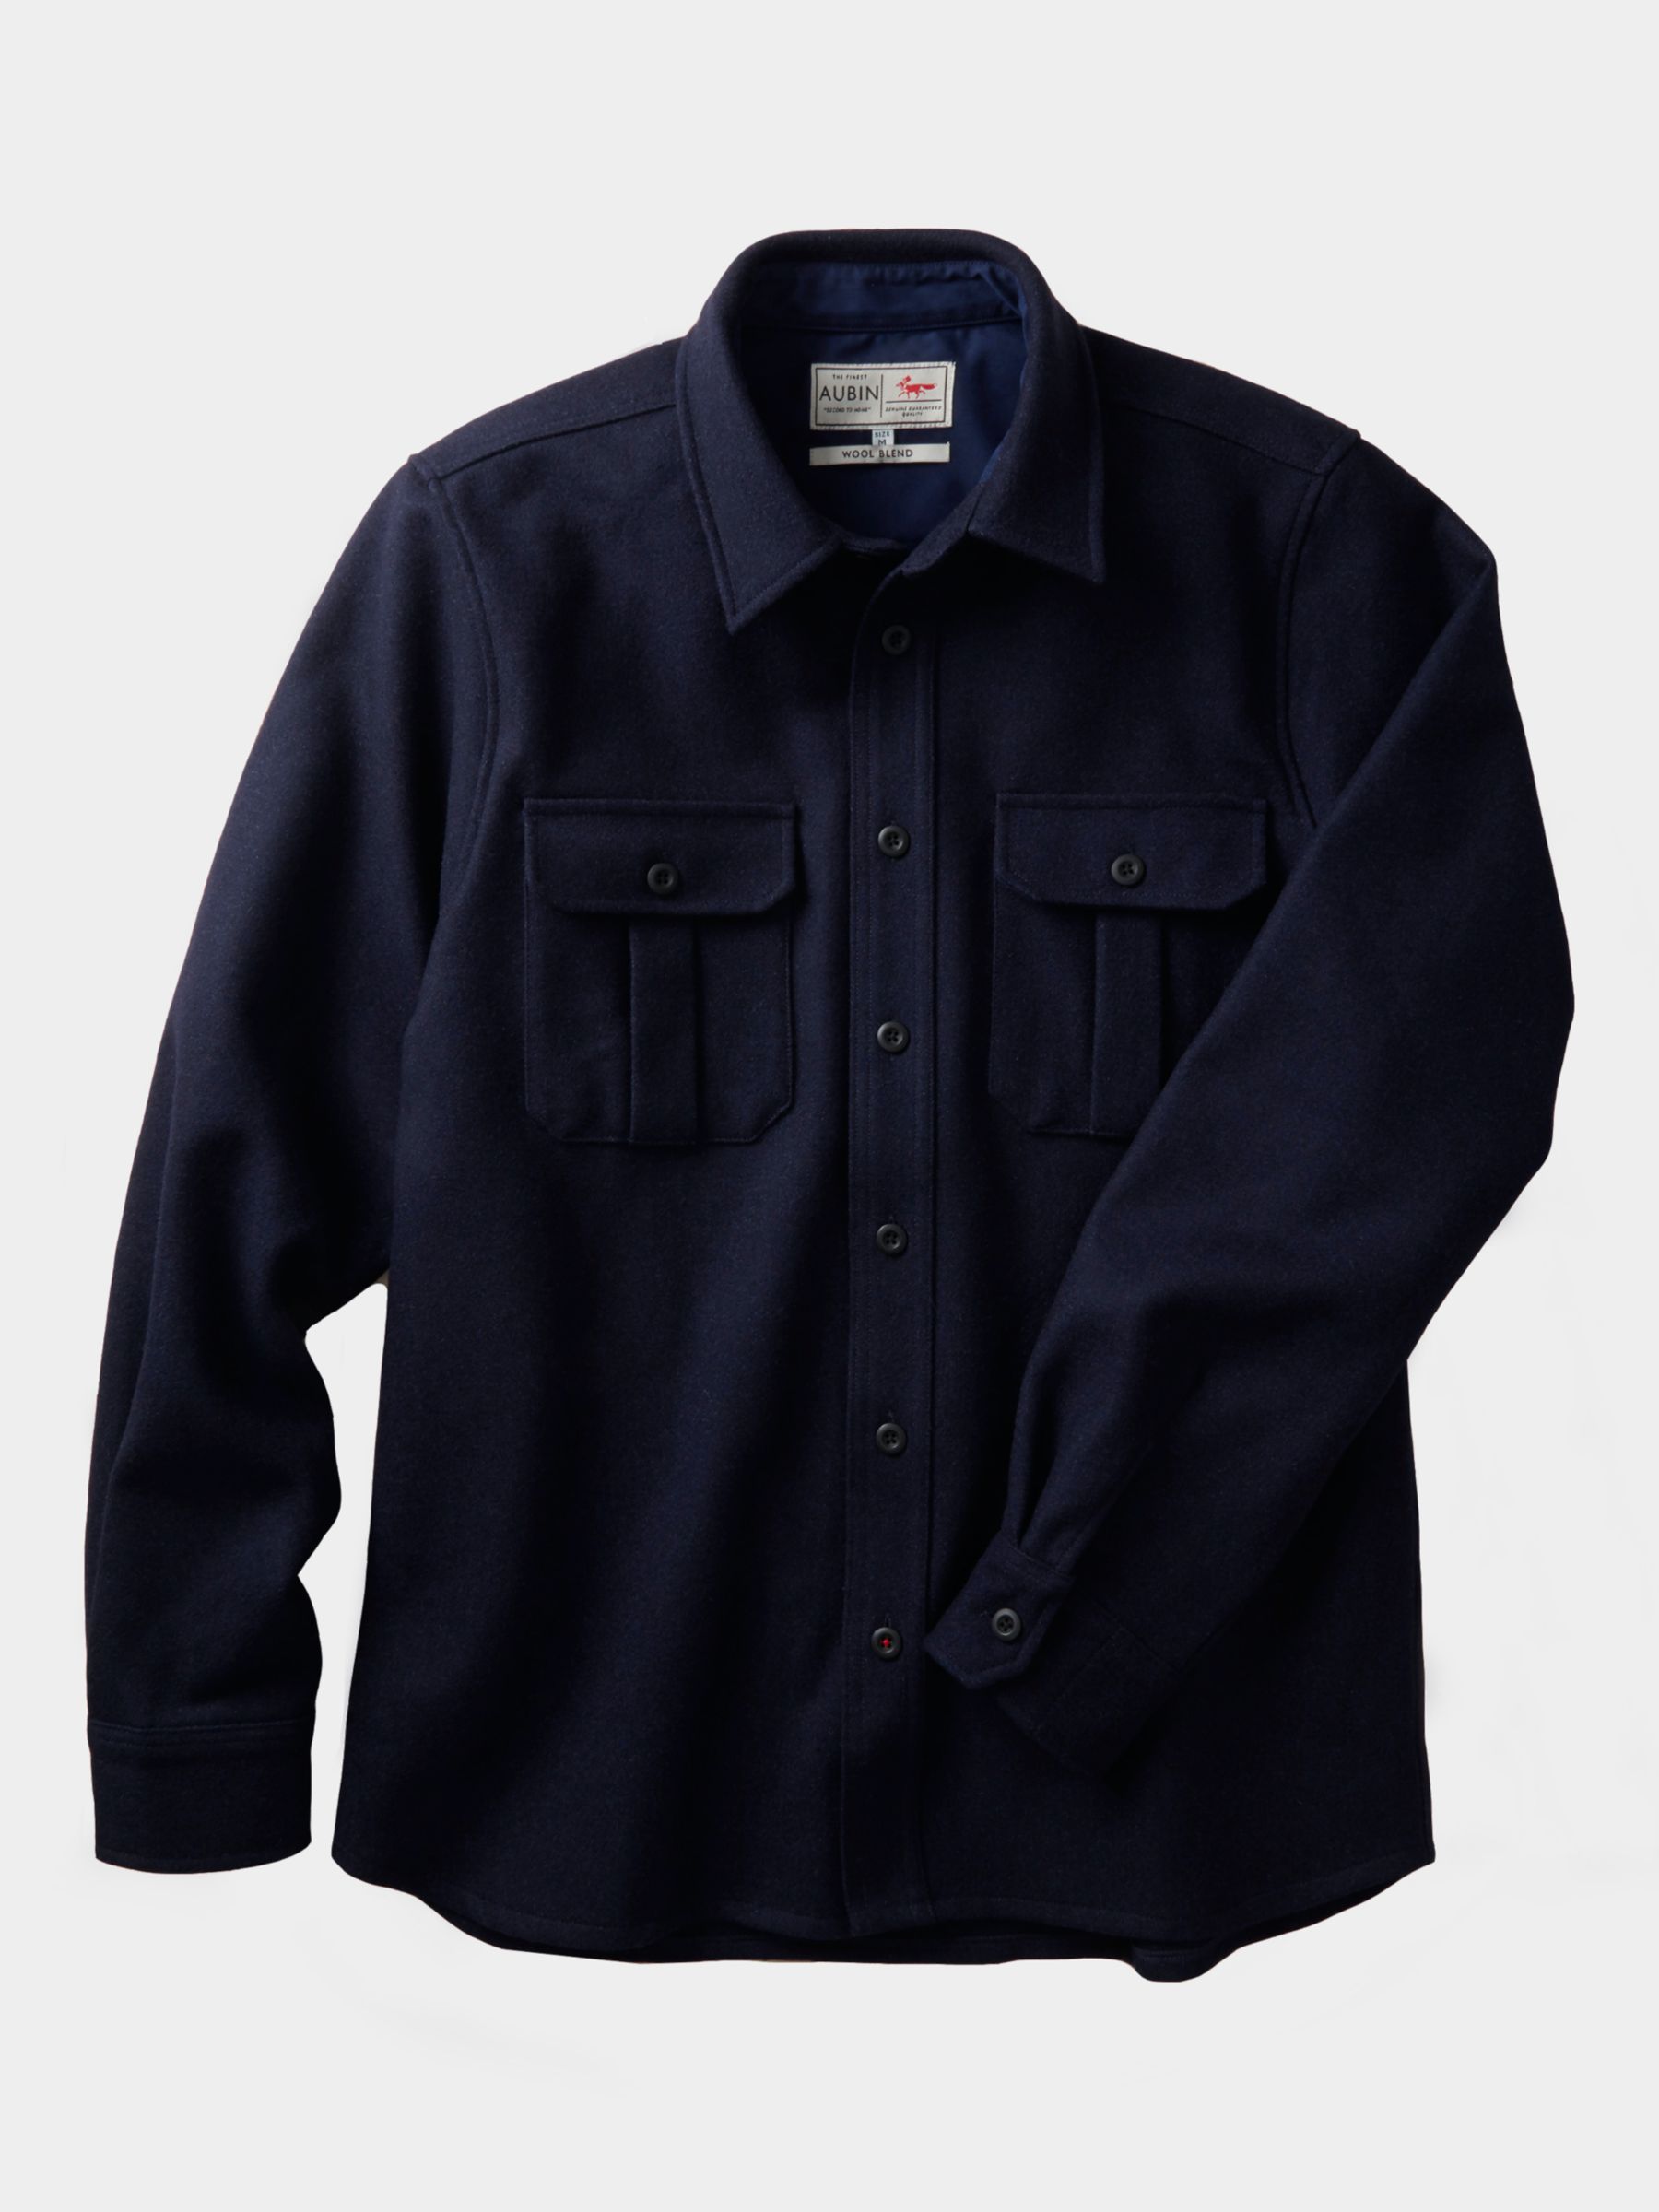 Aubin Lyaghts Wool Overshirt, Navy, S